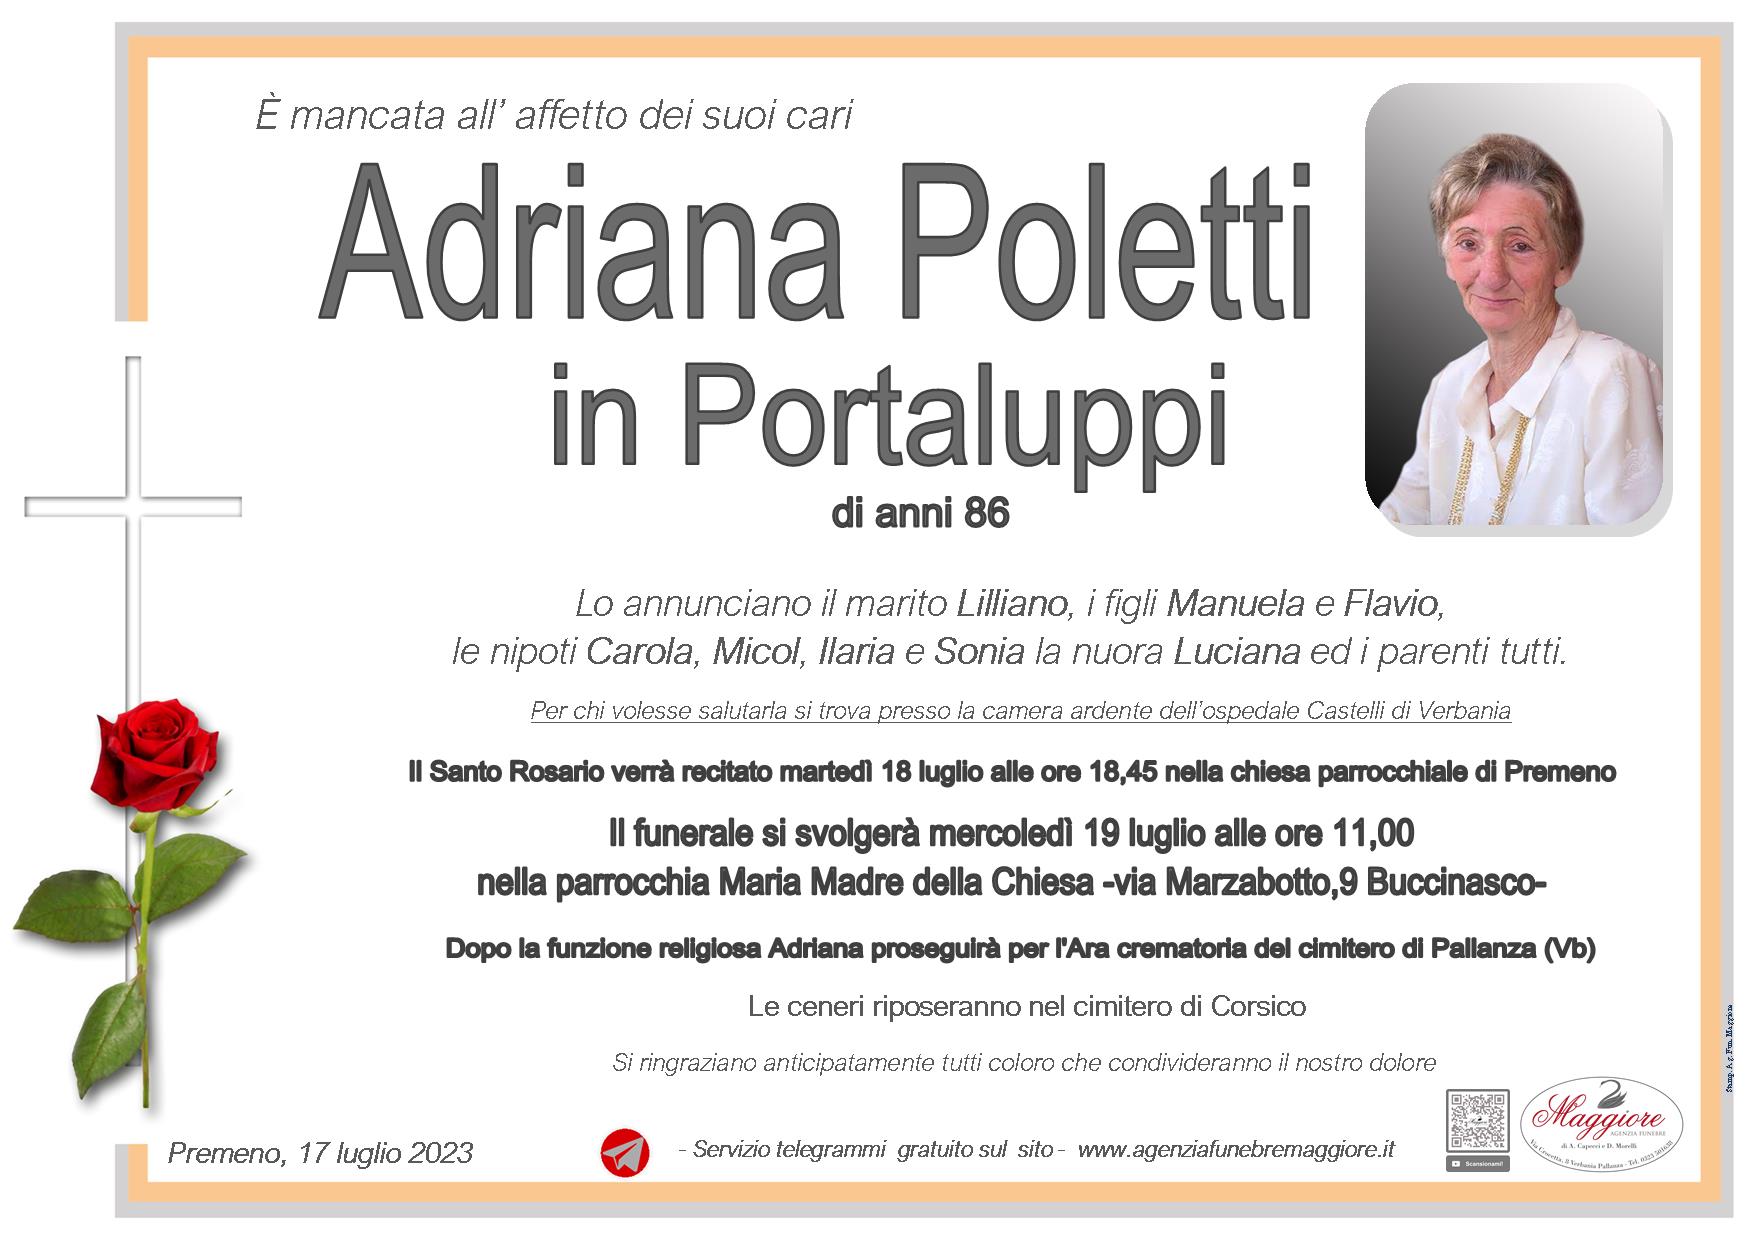 Adriana Poletti in Portaluppi